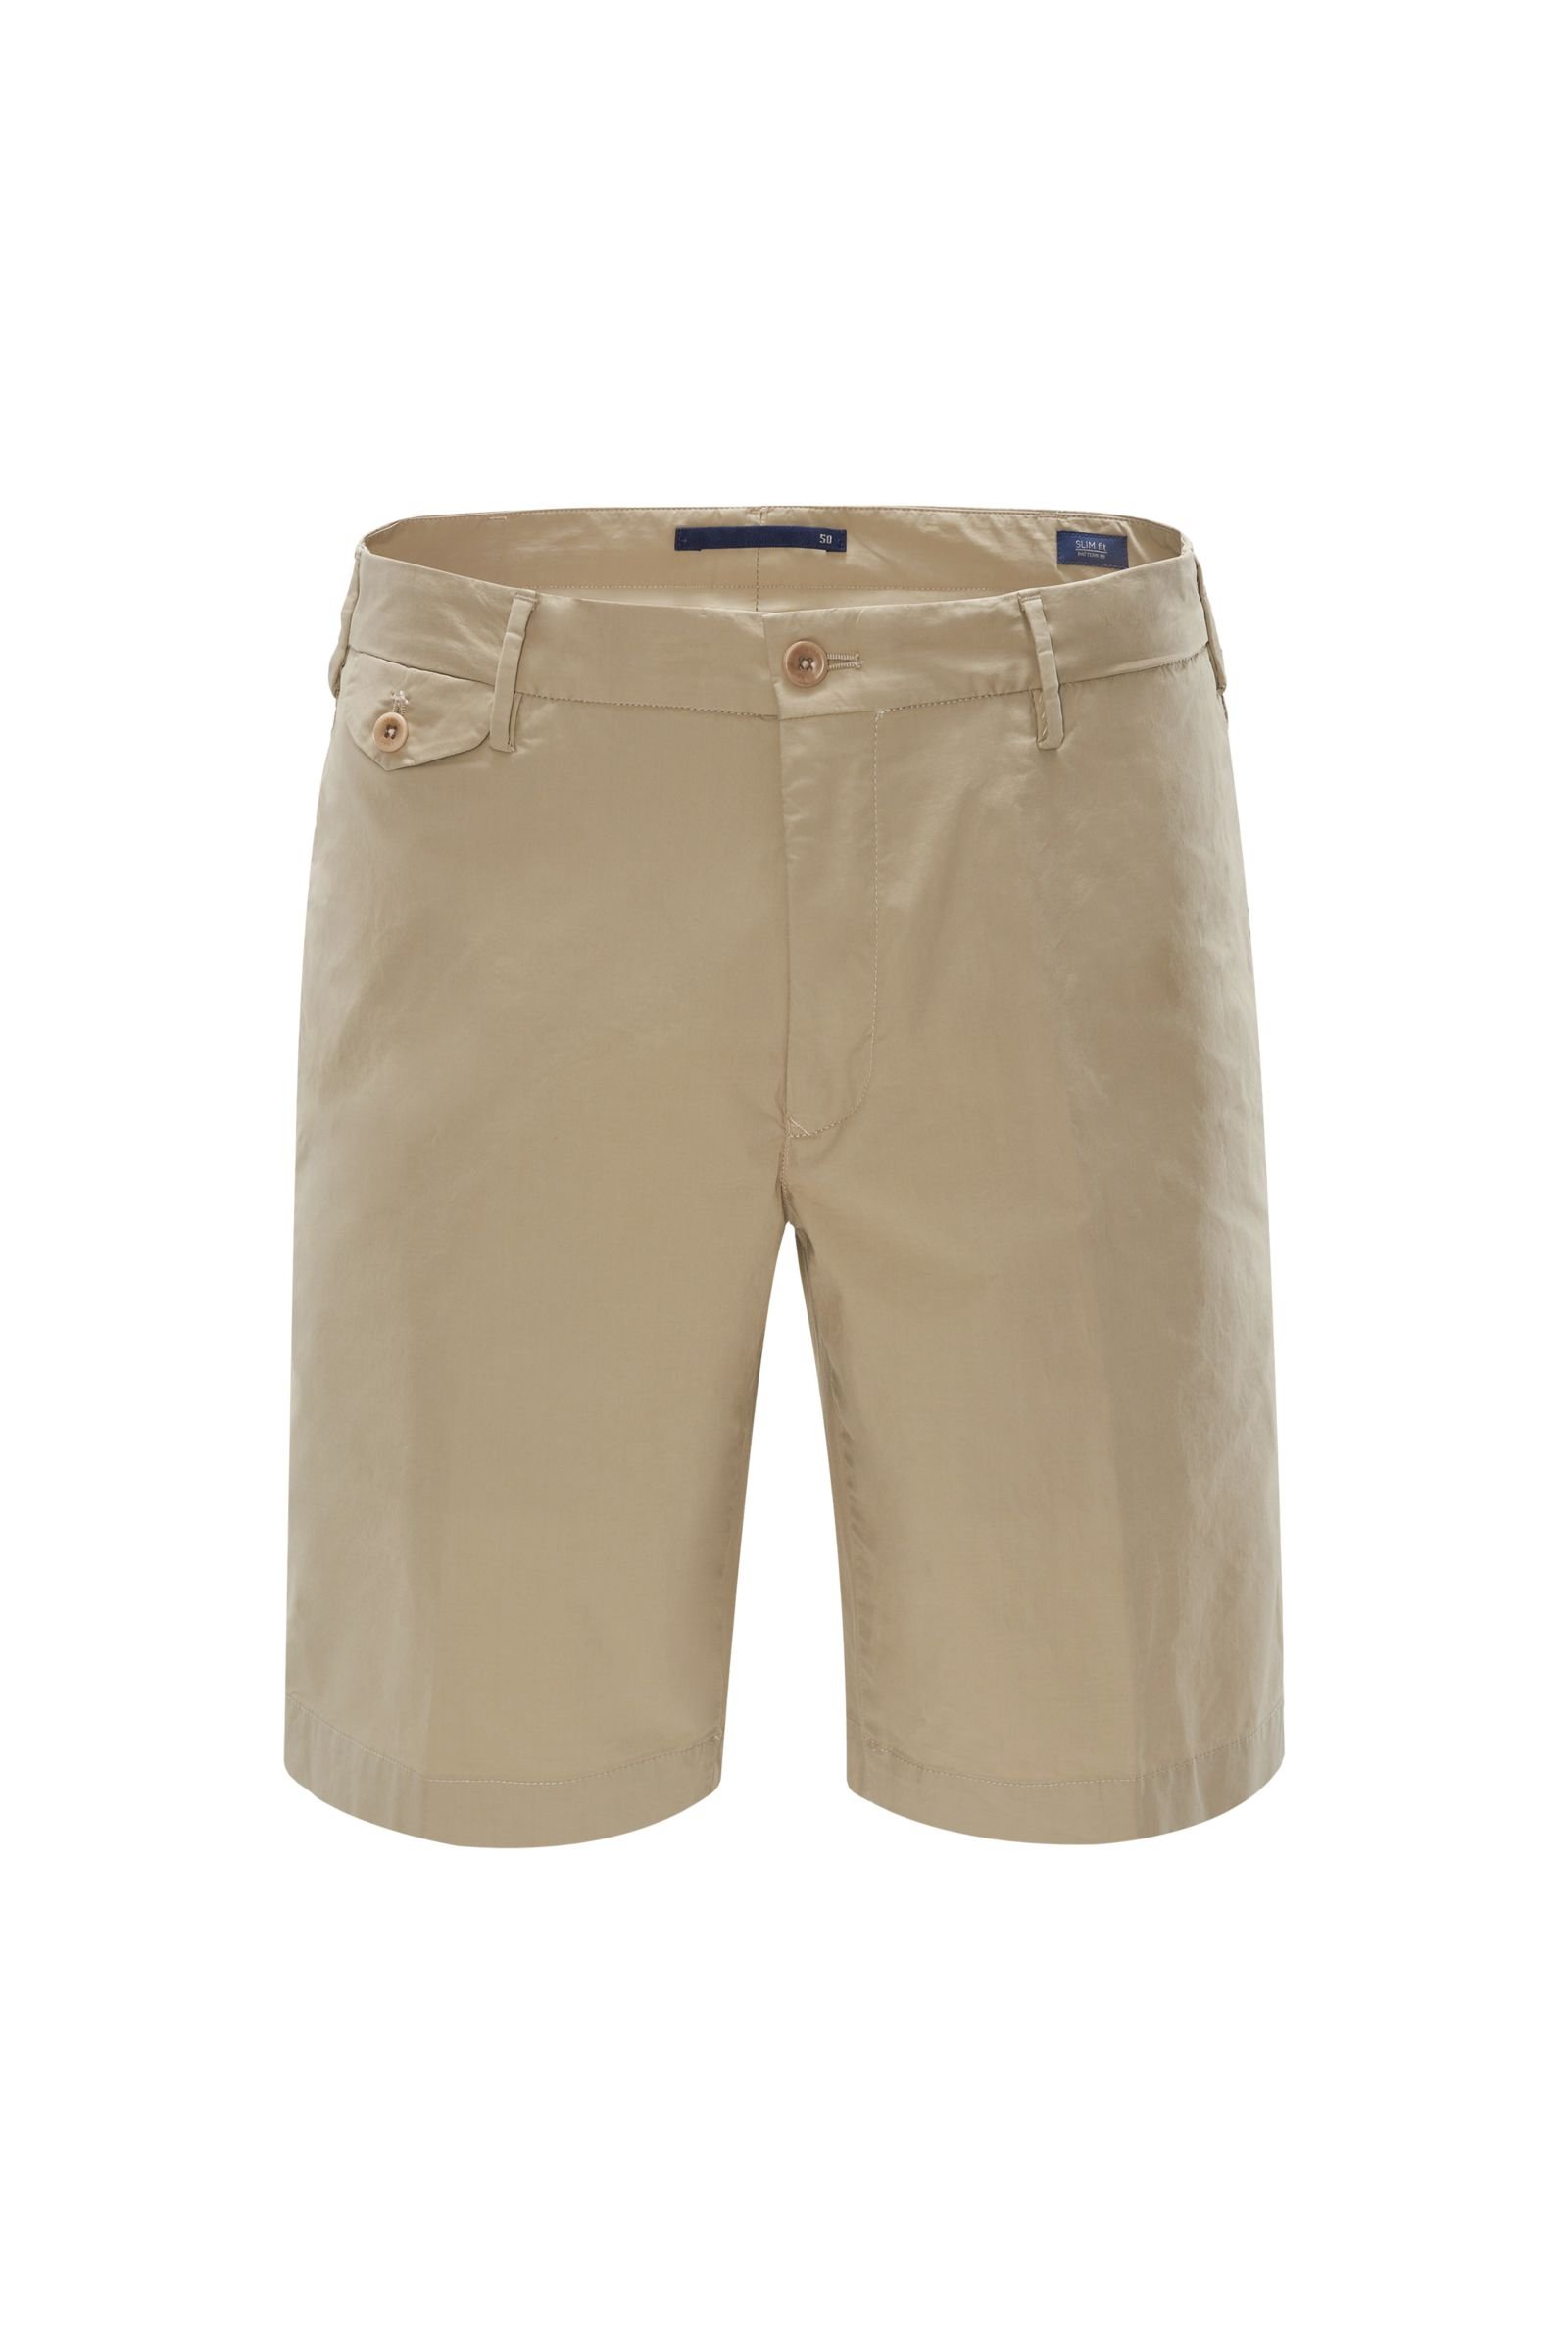 Bermuda shorts 'Slim Fit' beige